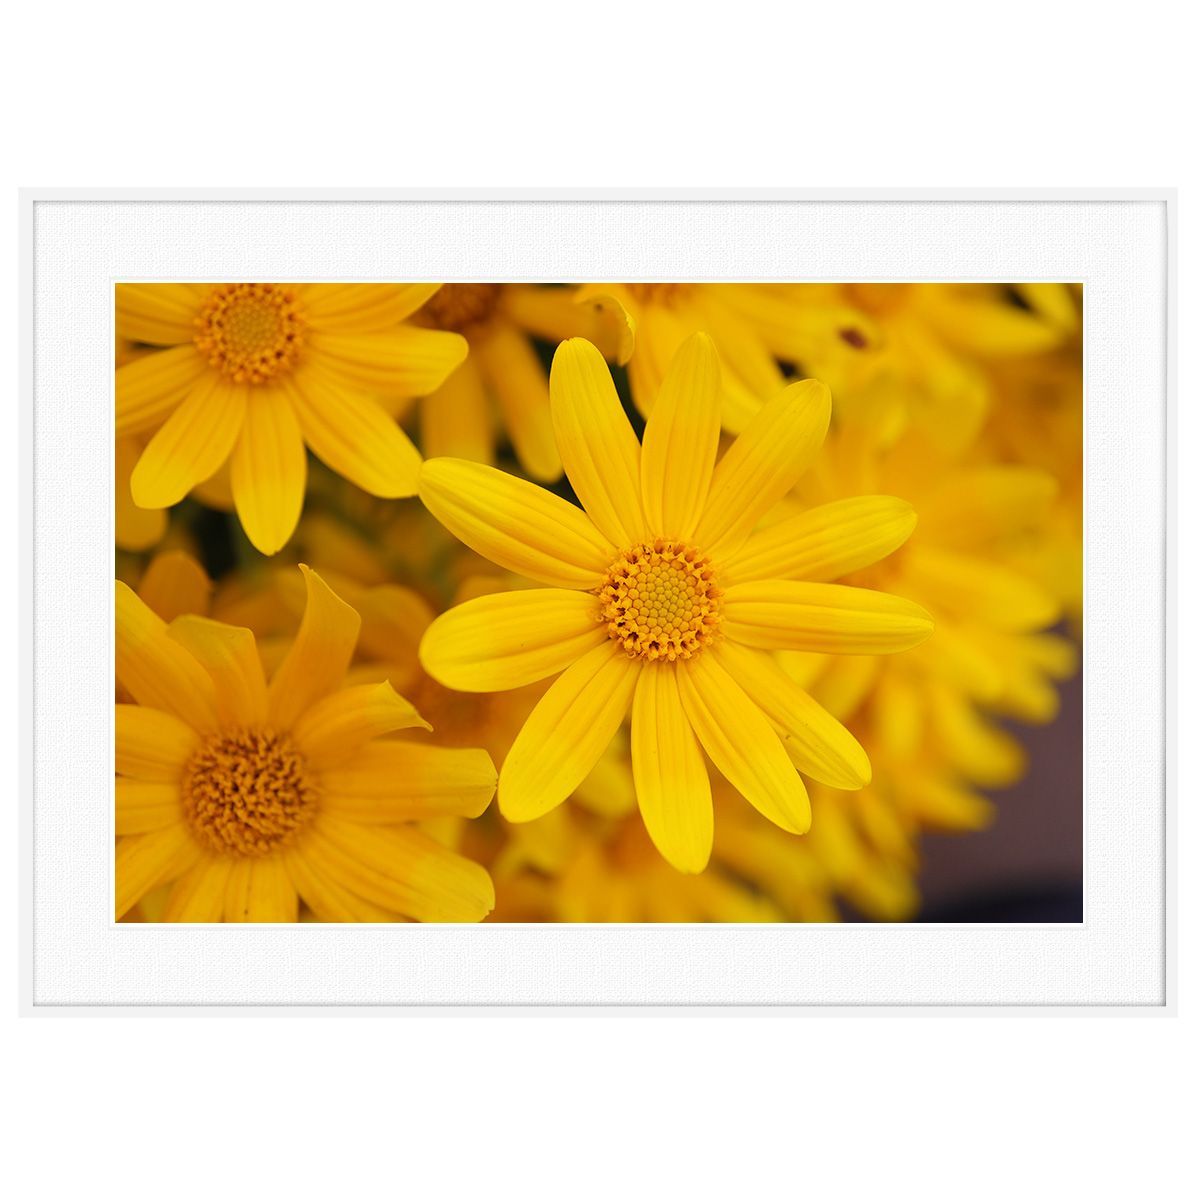 超歓迎 花写真 黄色い花写真 インテリアアートポスター写真額装 AS0657